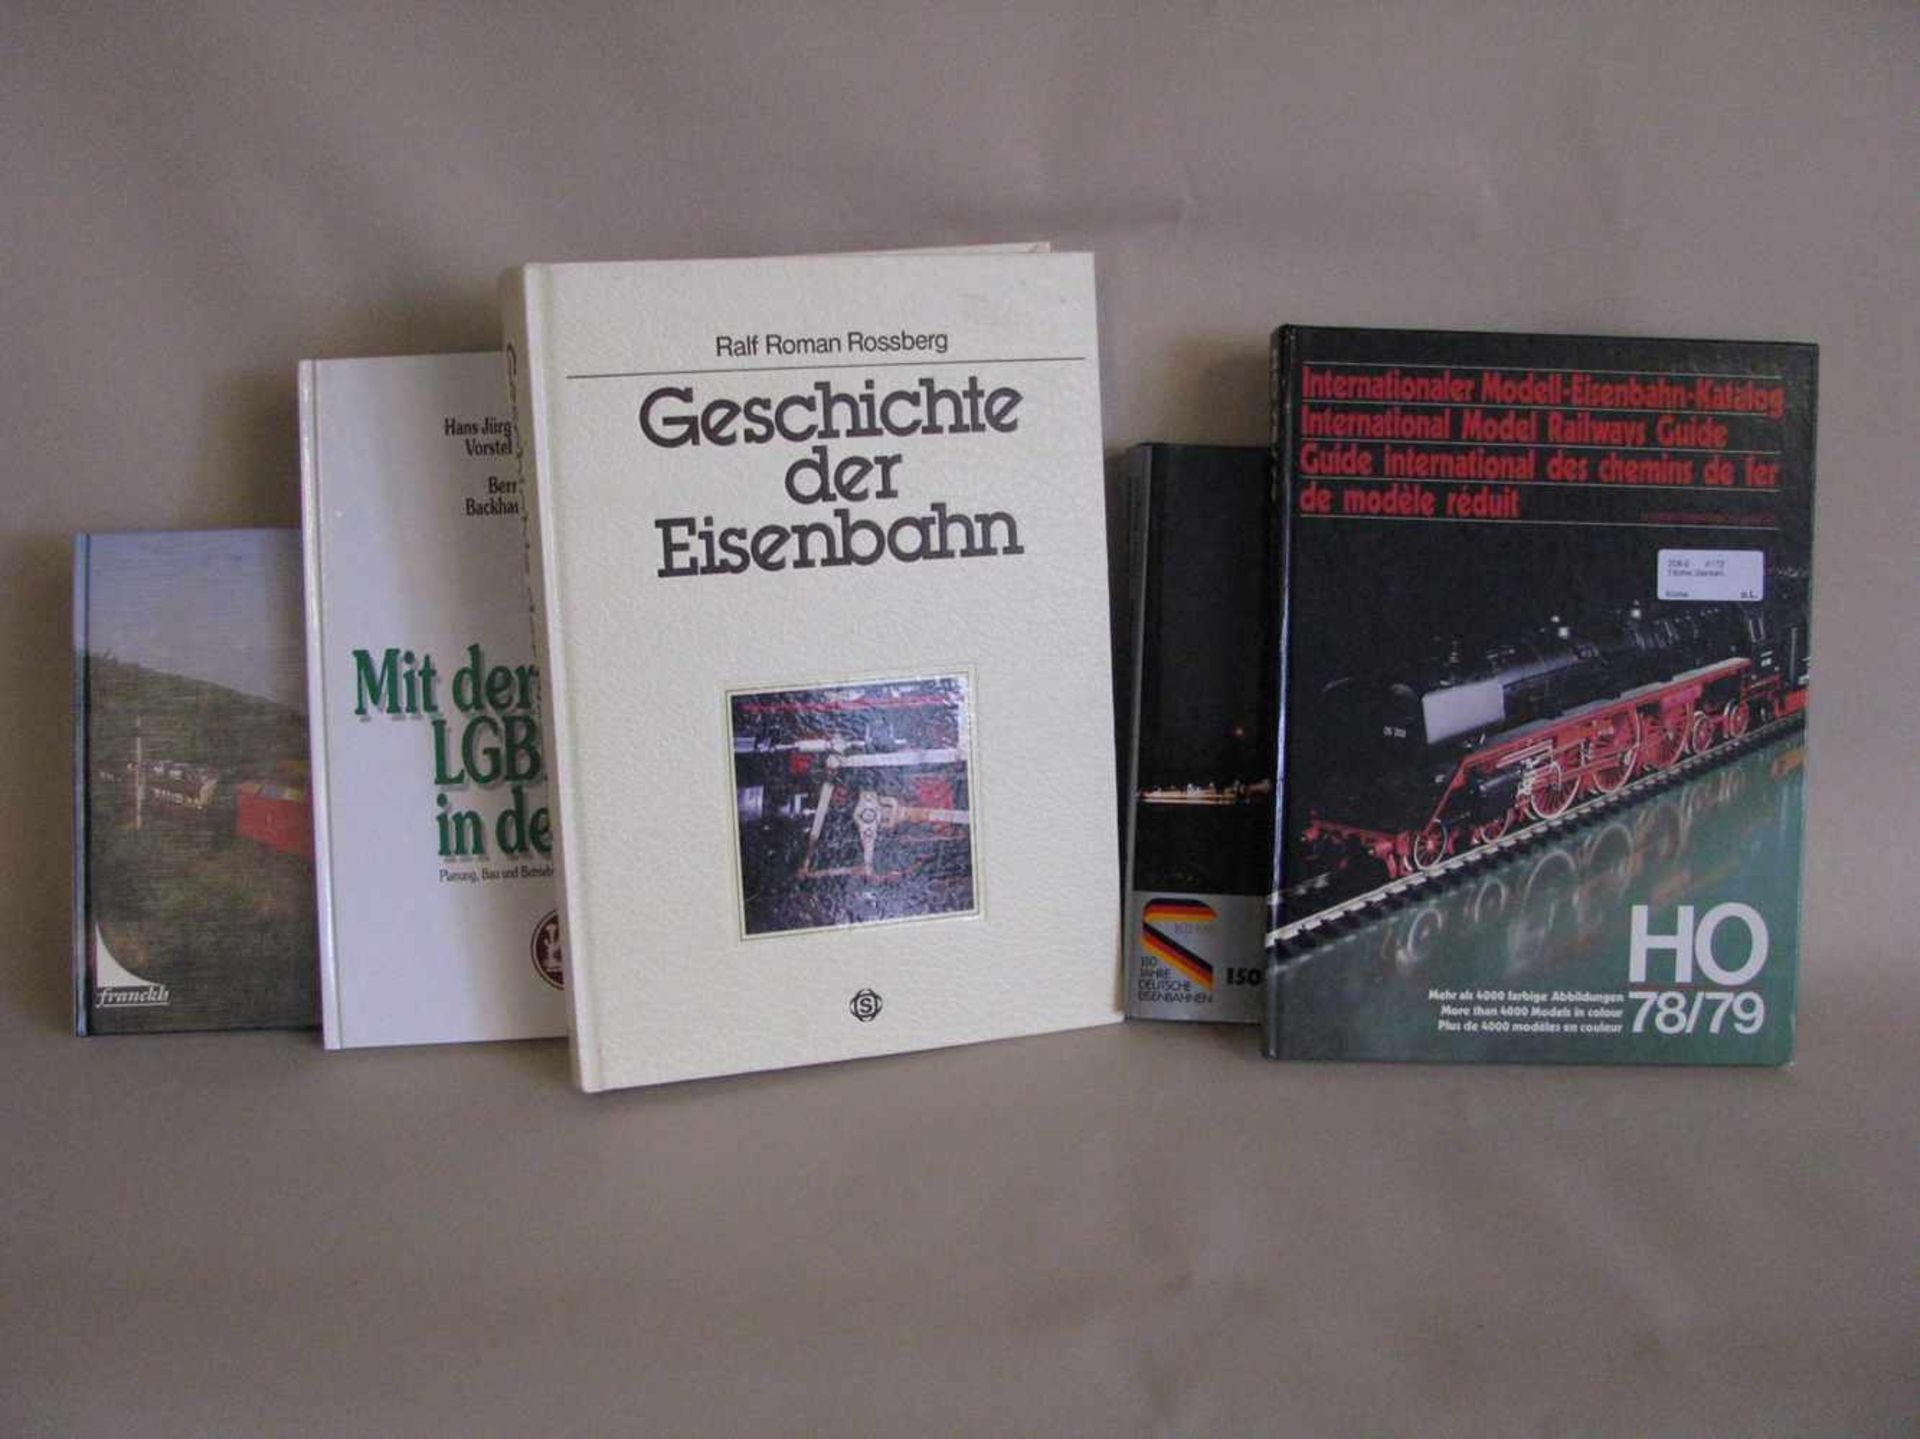 5 diverse Bücher zum Thema "Eisenbahn".- - -19.00 % buyer's premium on the hammer price19.00 % VAT